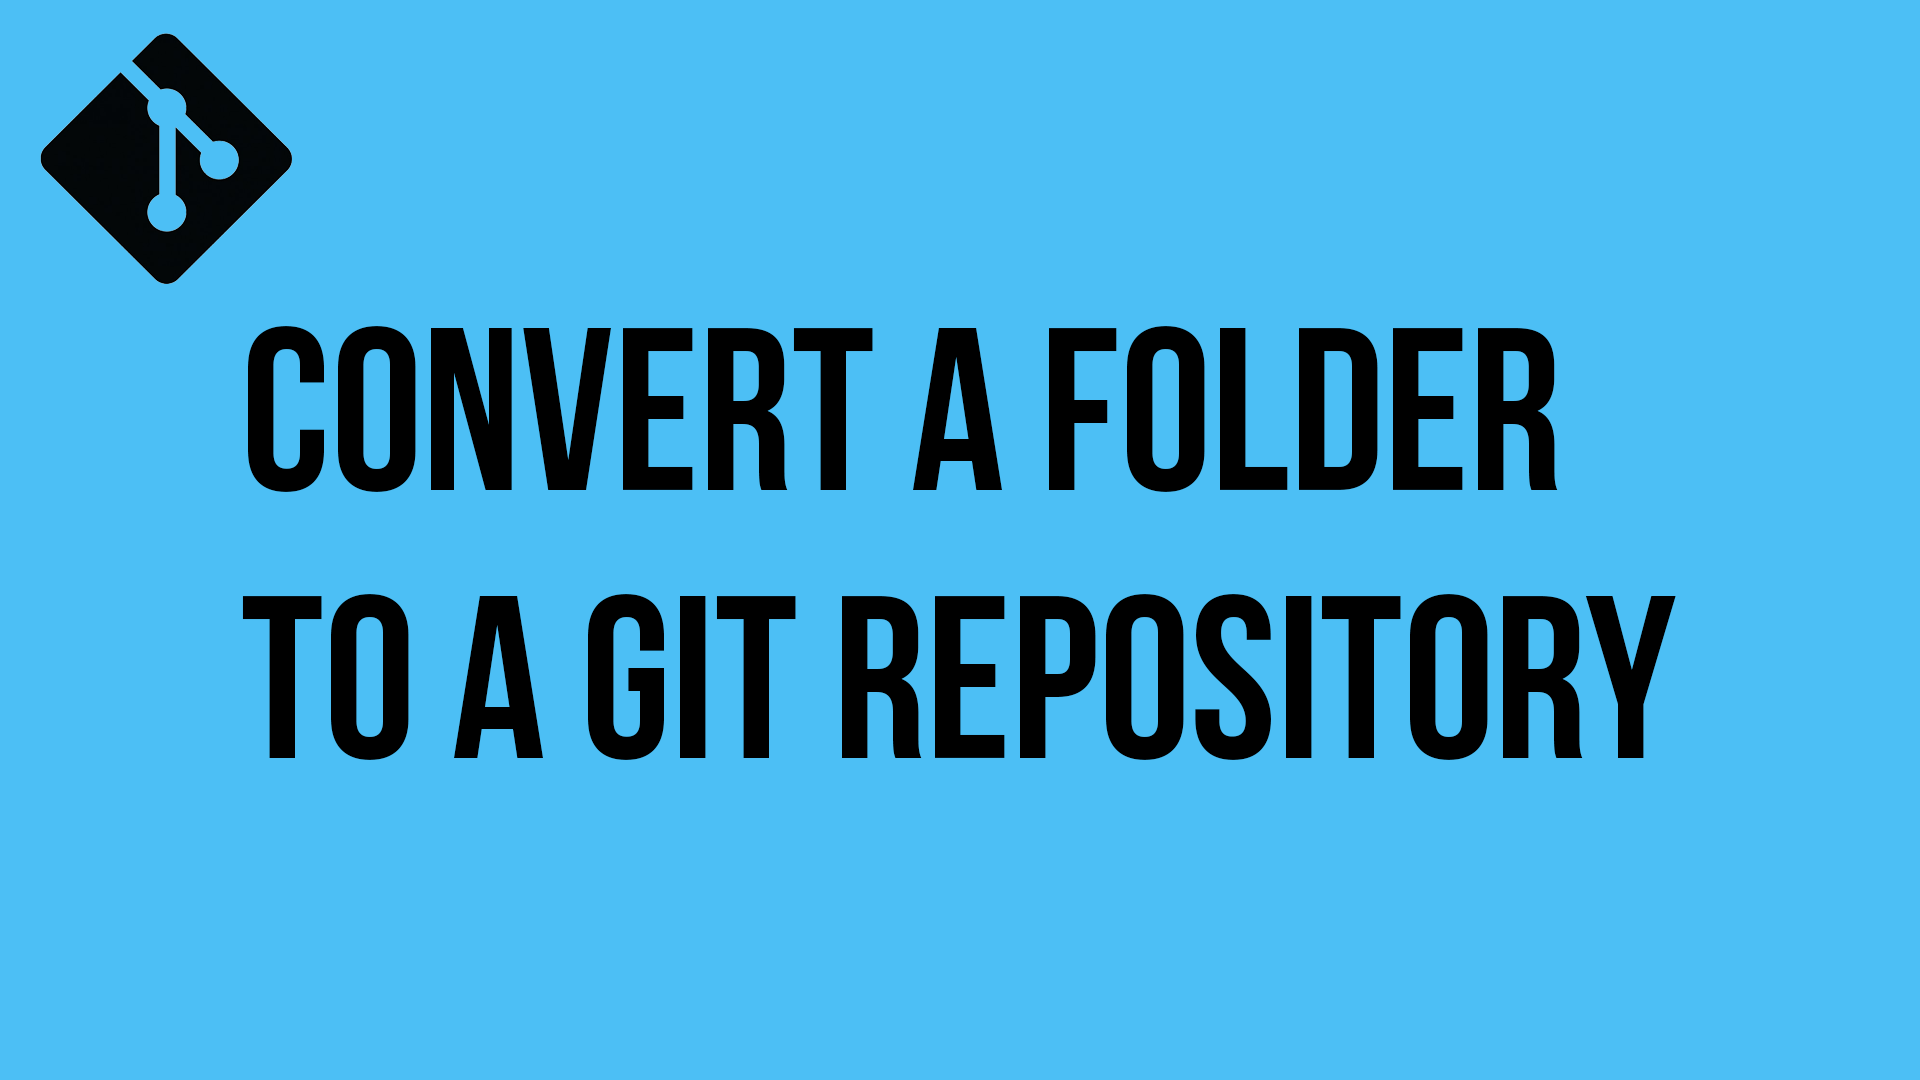 Convert a folder to a Git repository